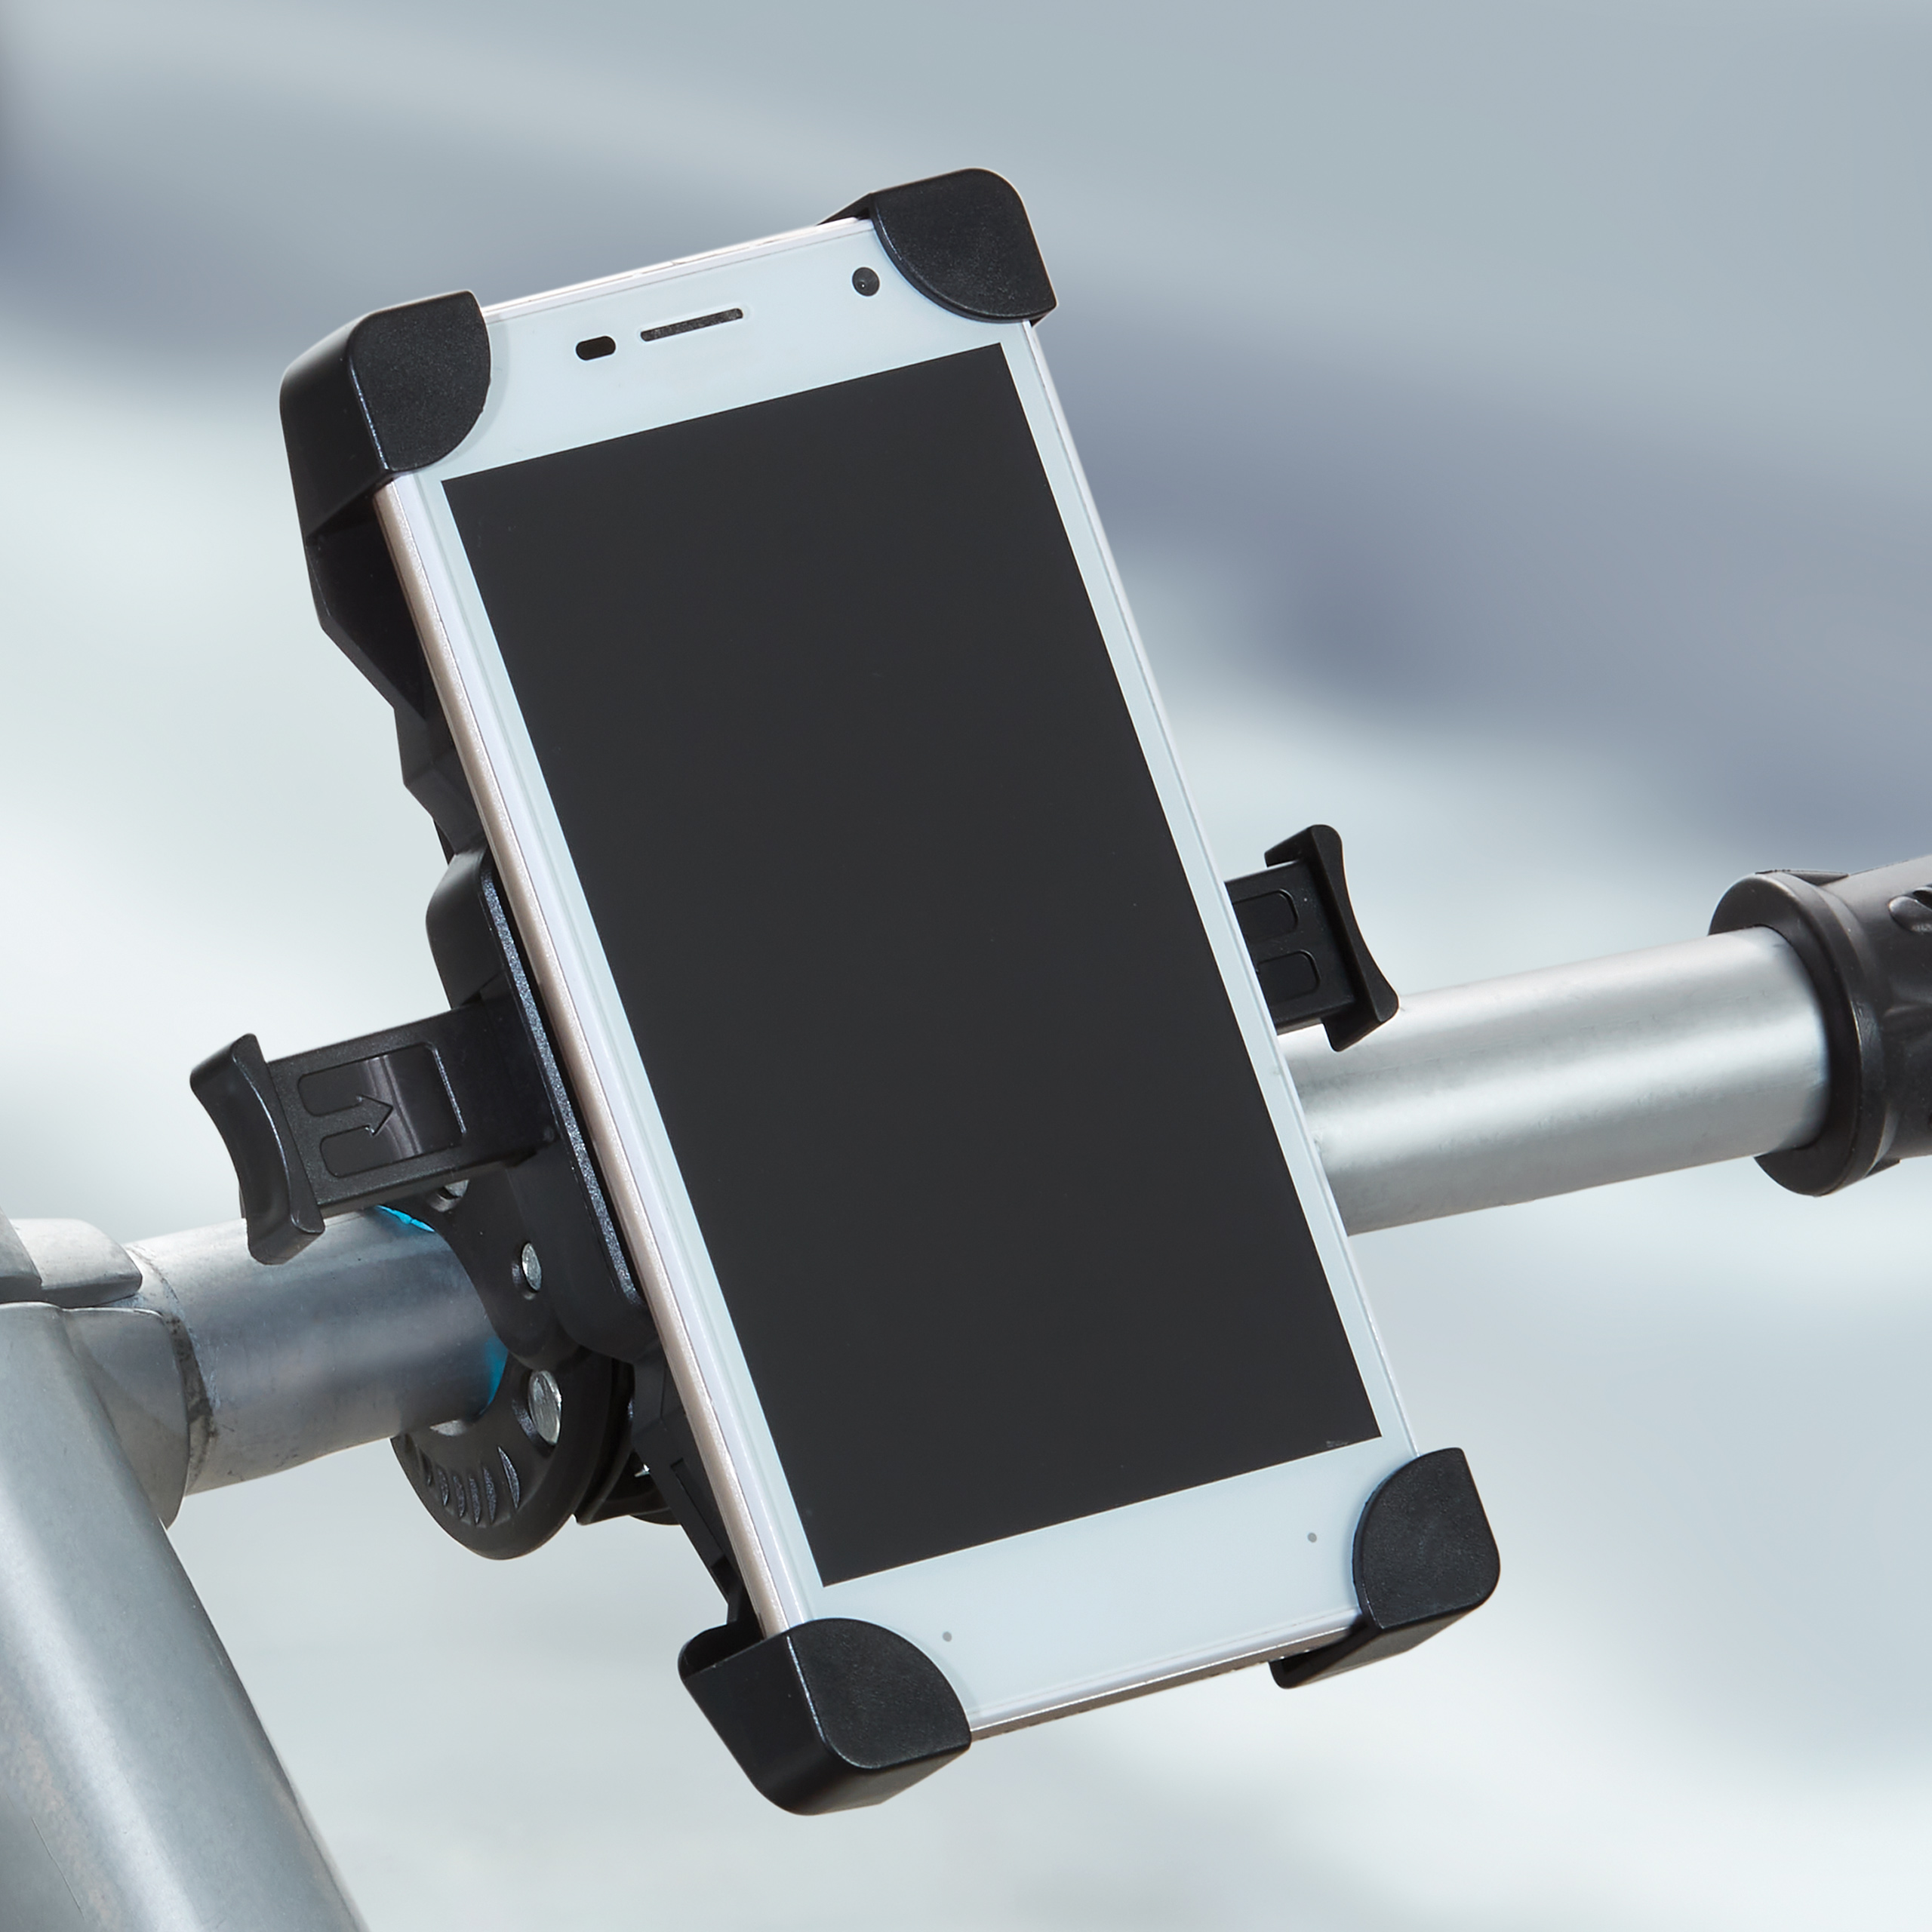 Soporte para el celular para moto y bicicleta – Era Tecnologia